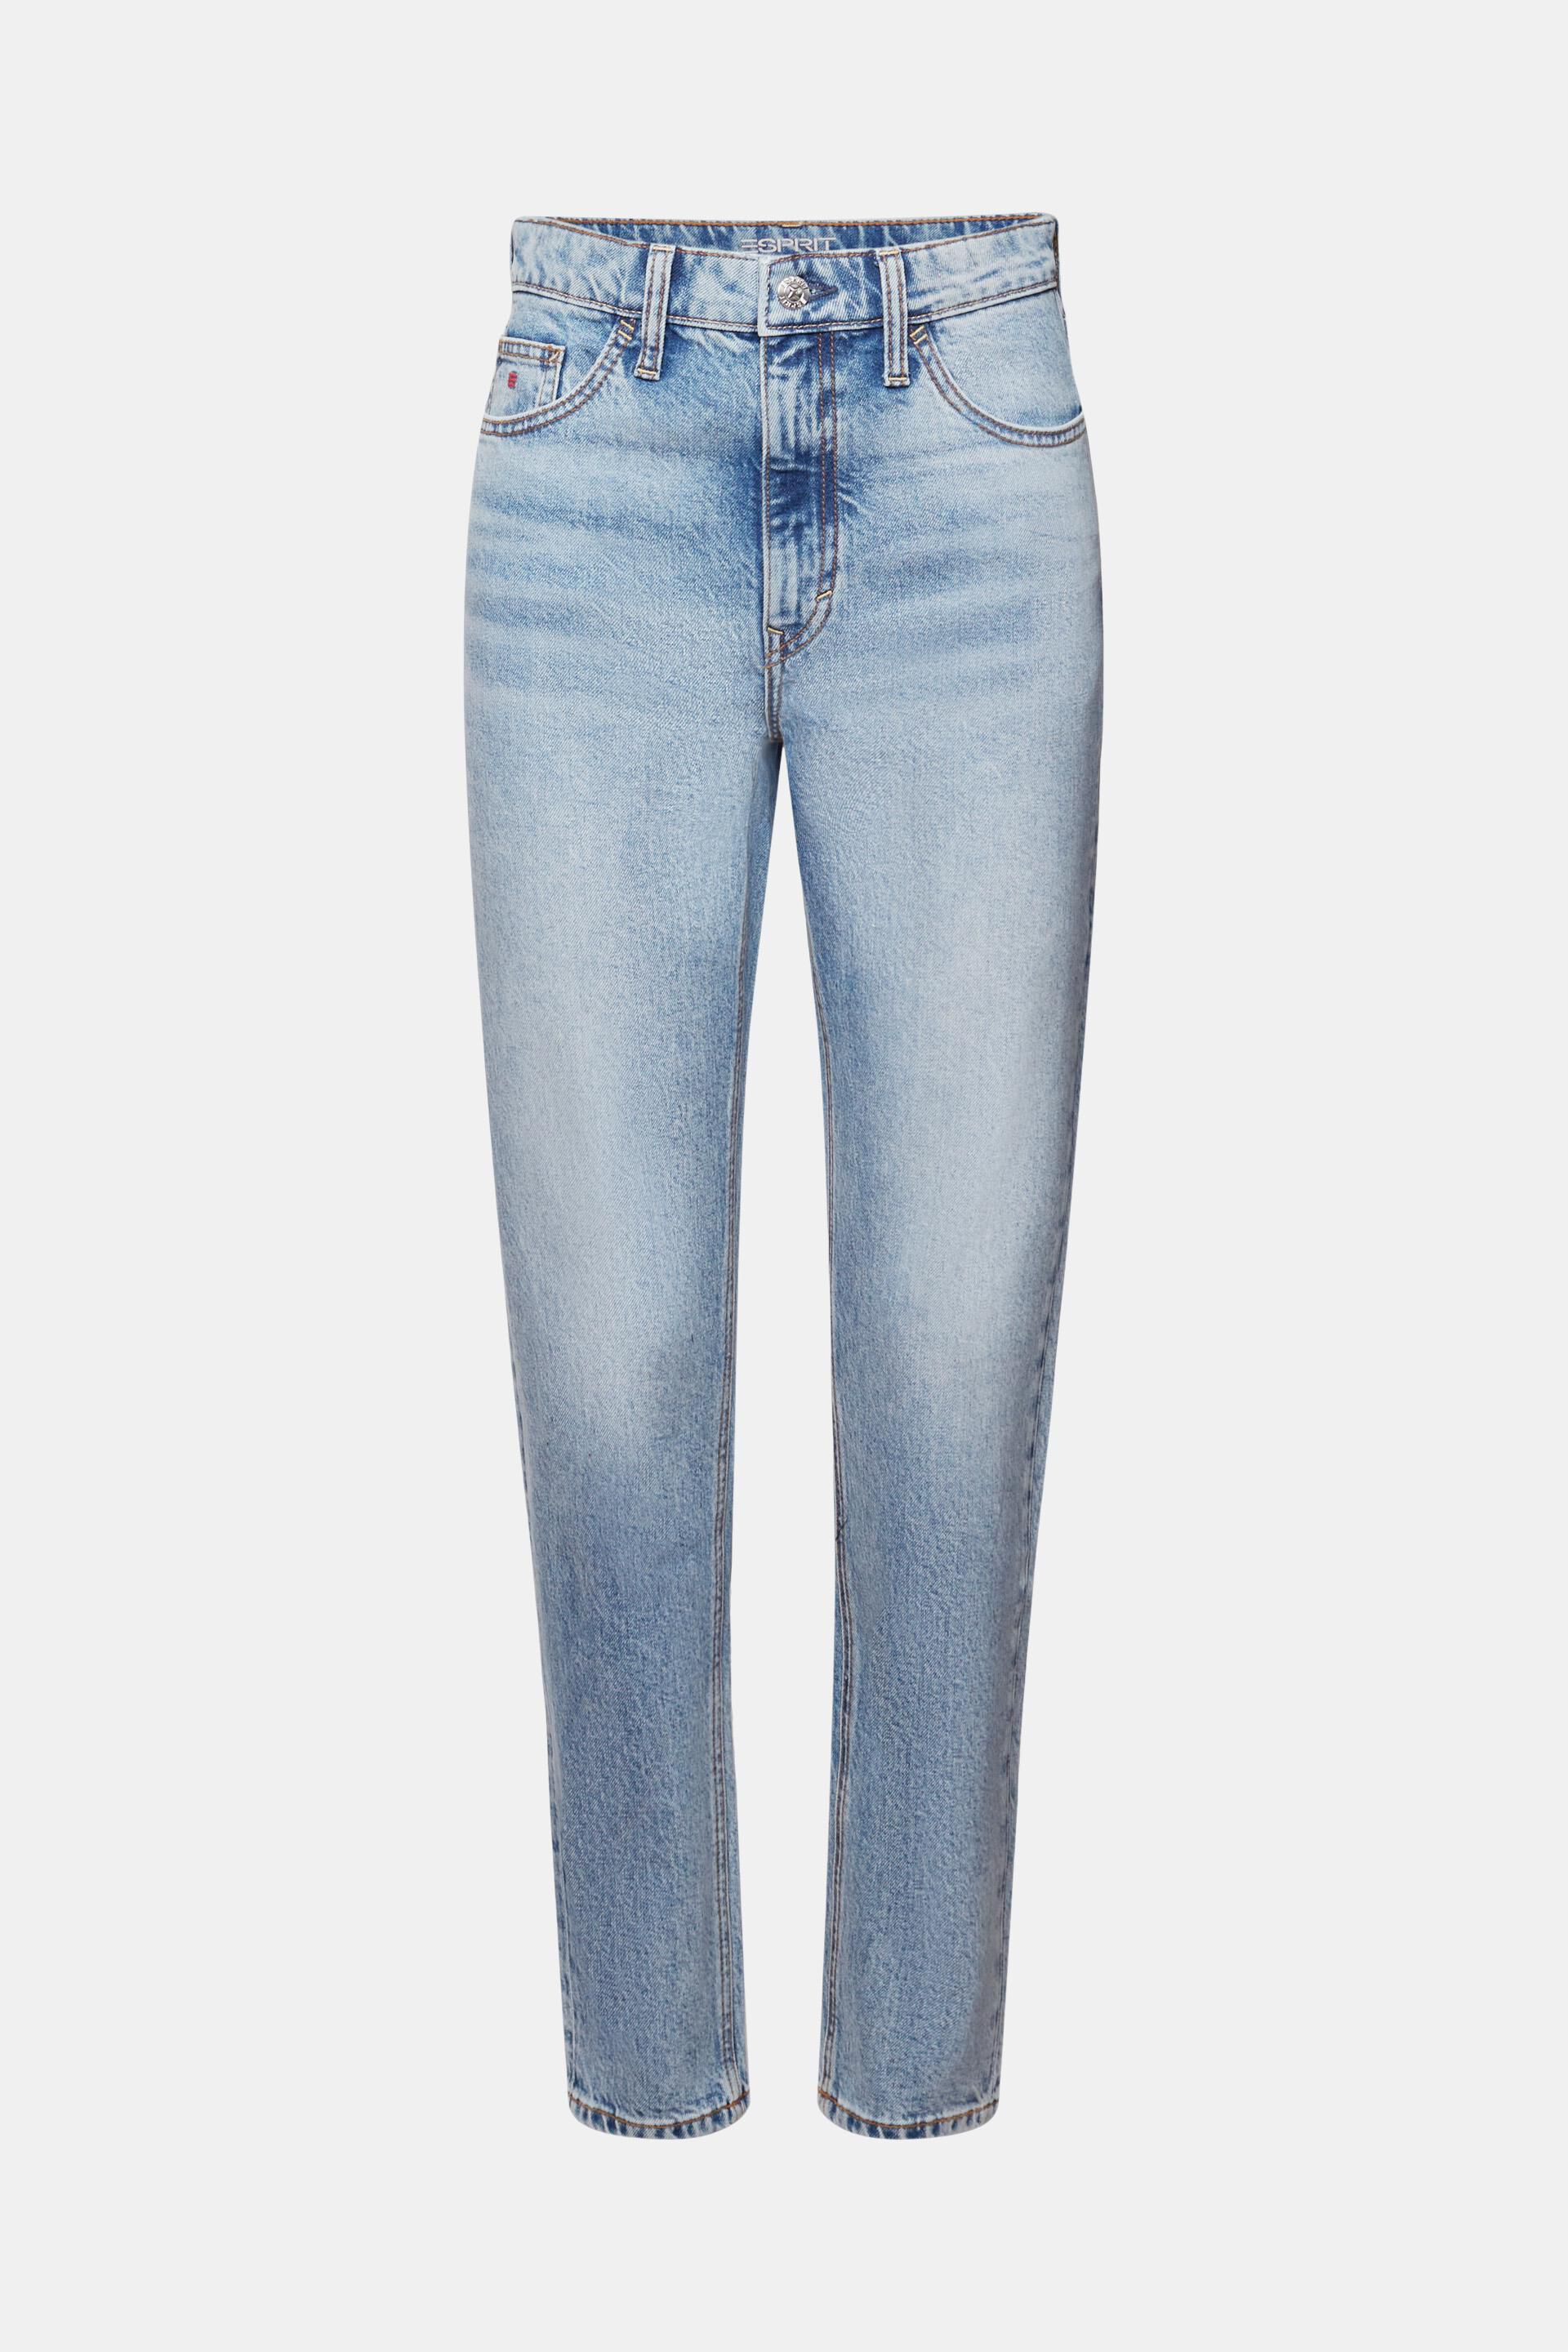 Esprit Damen Klassische Retro-Jeans mit hohem Bund